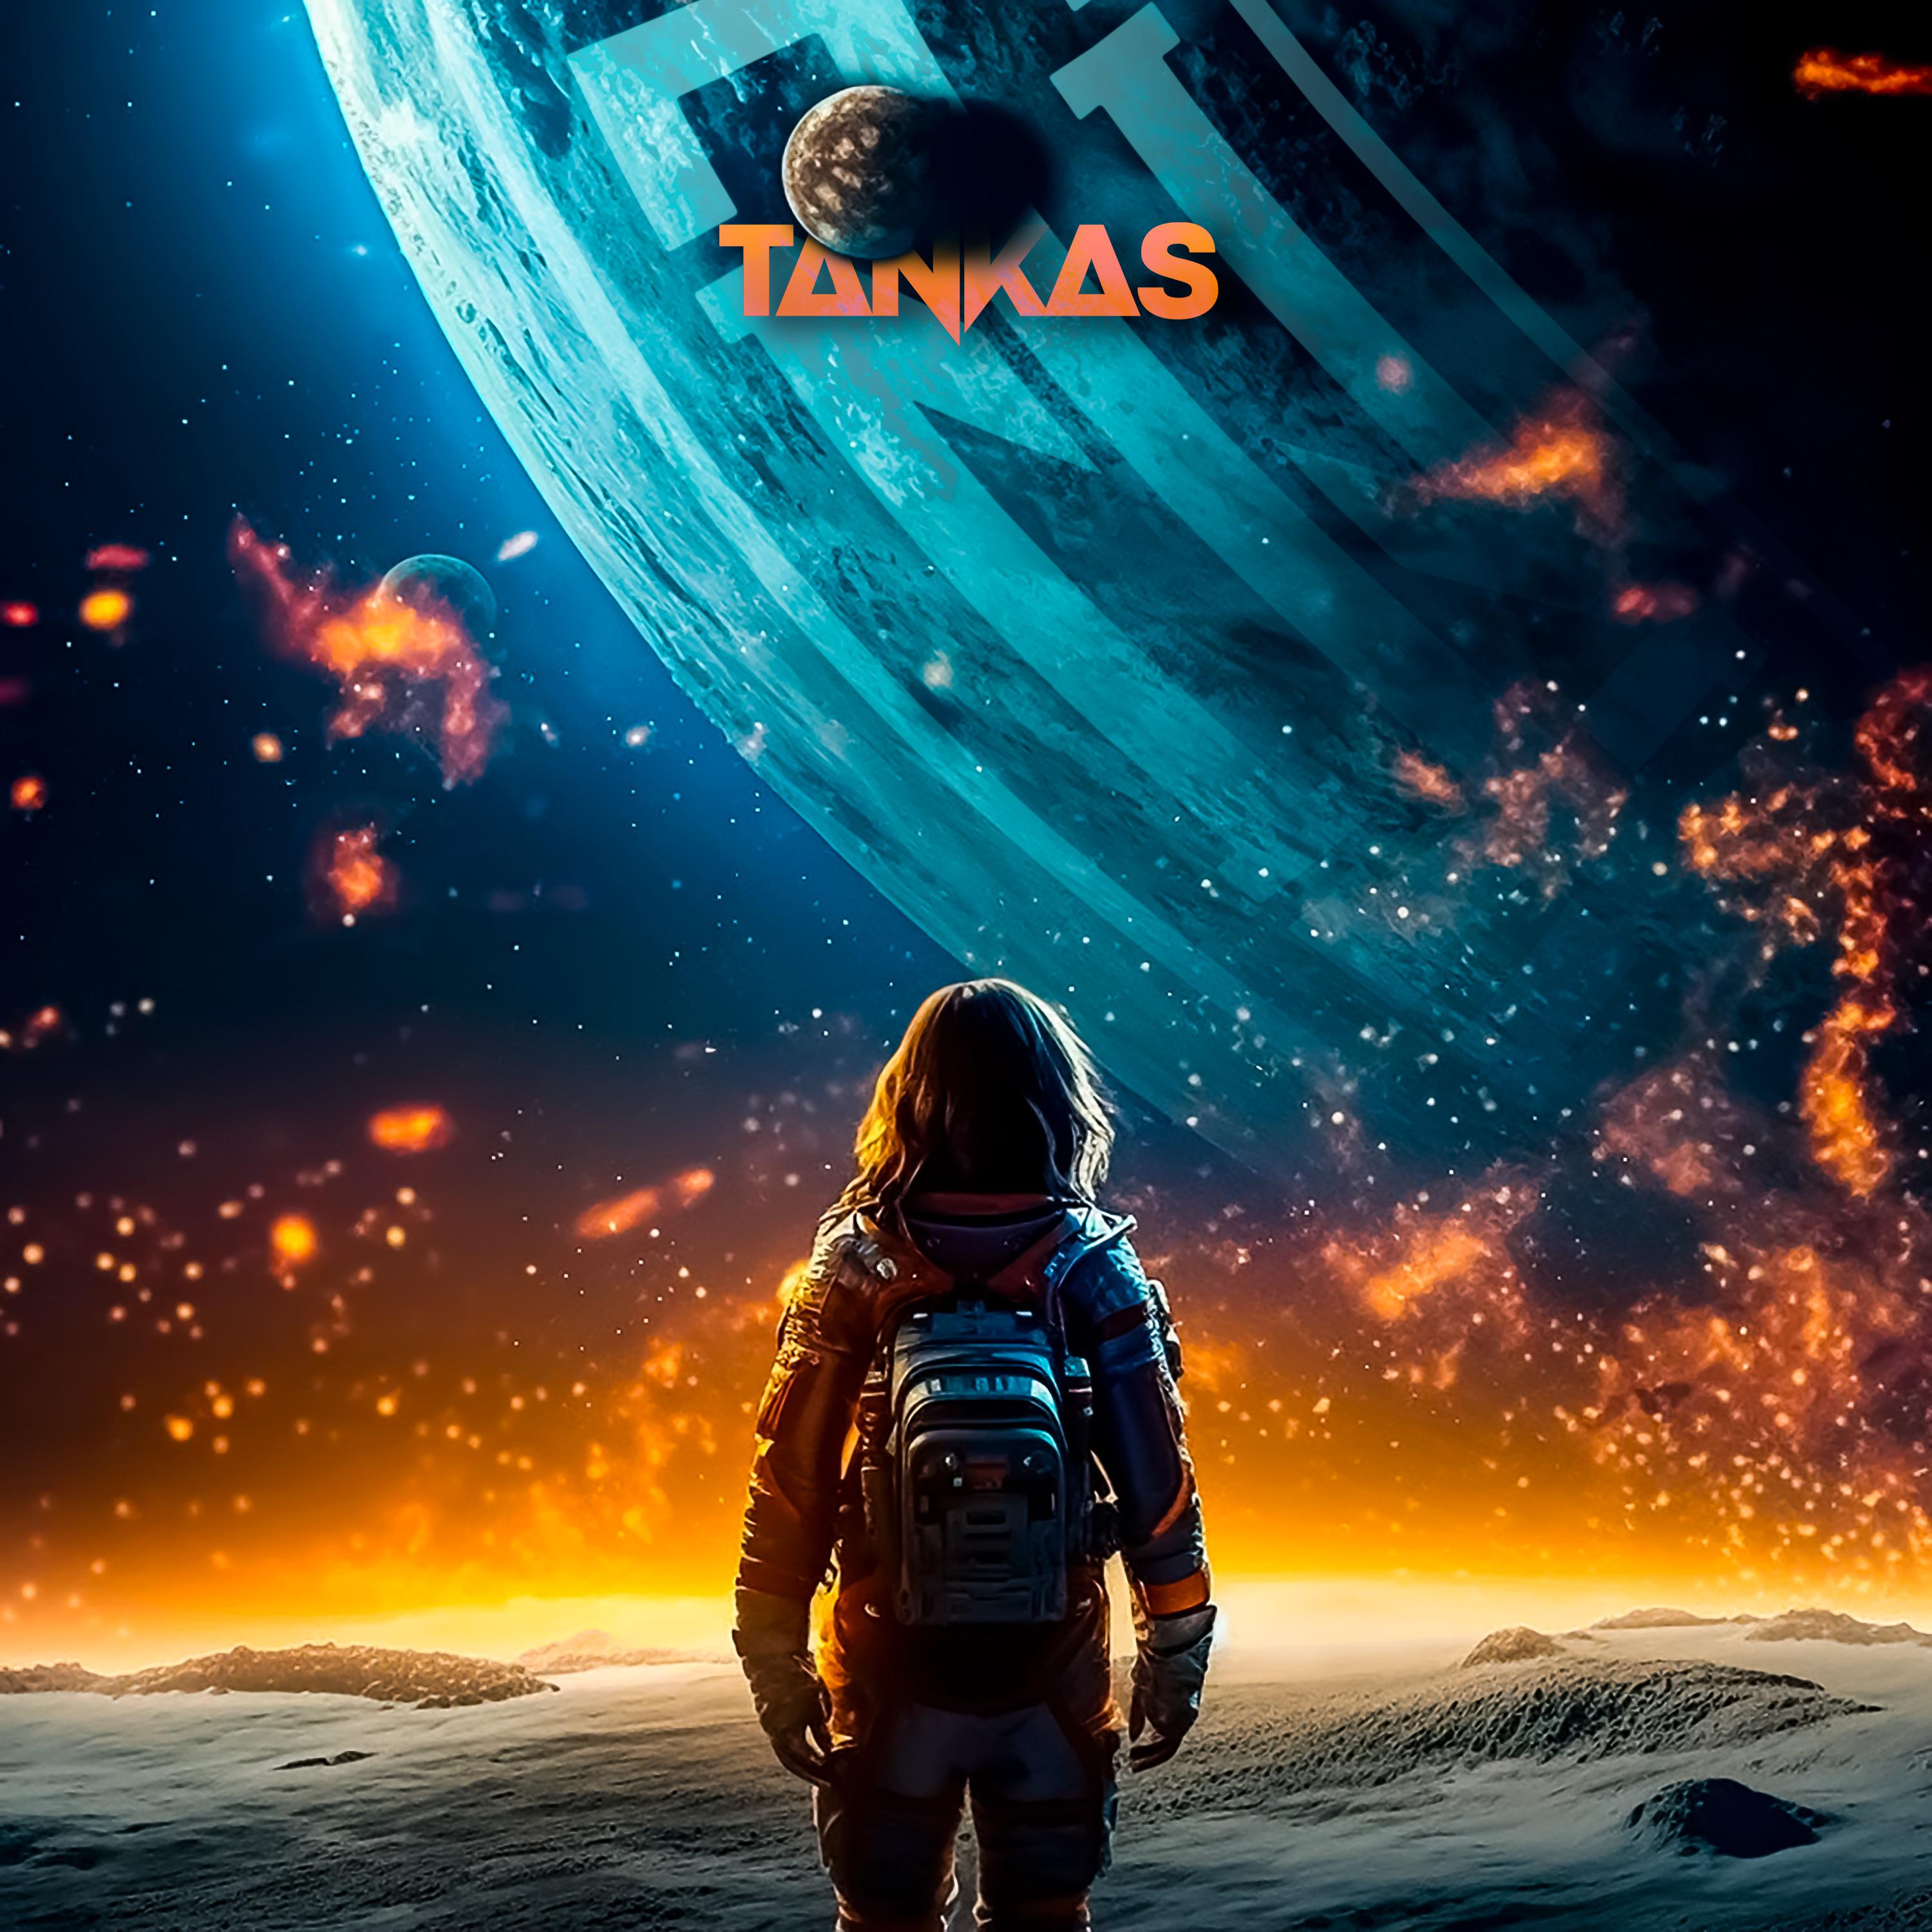 Постер альбома На краю вселенной